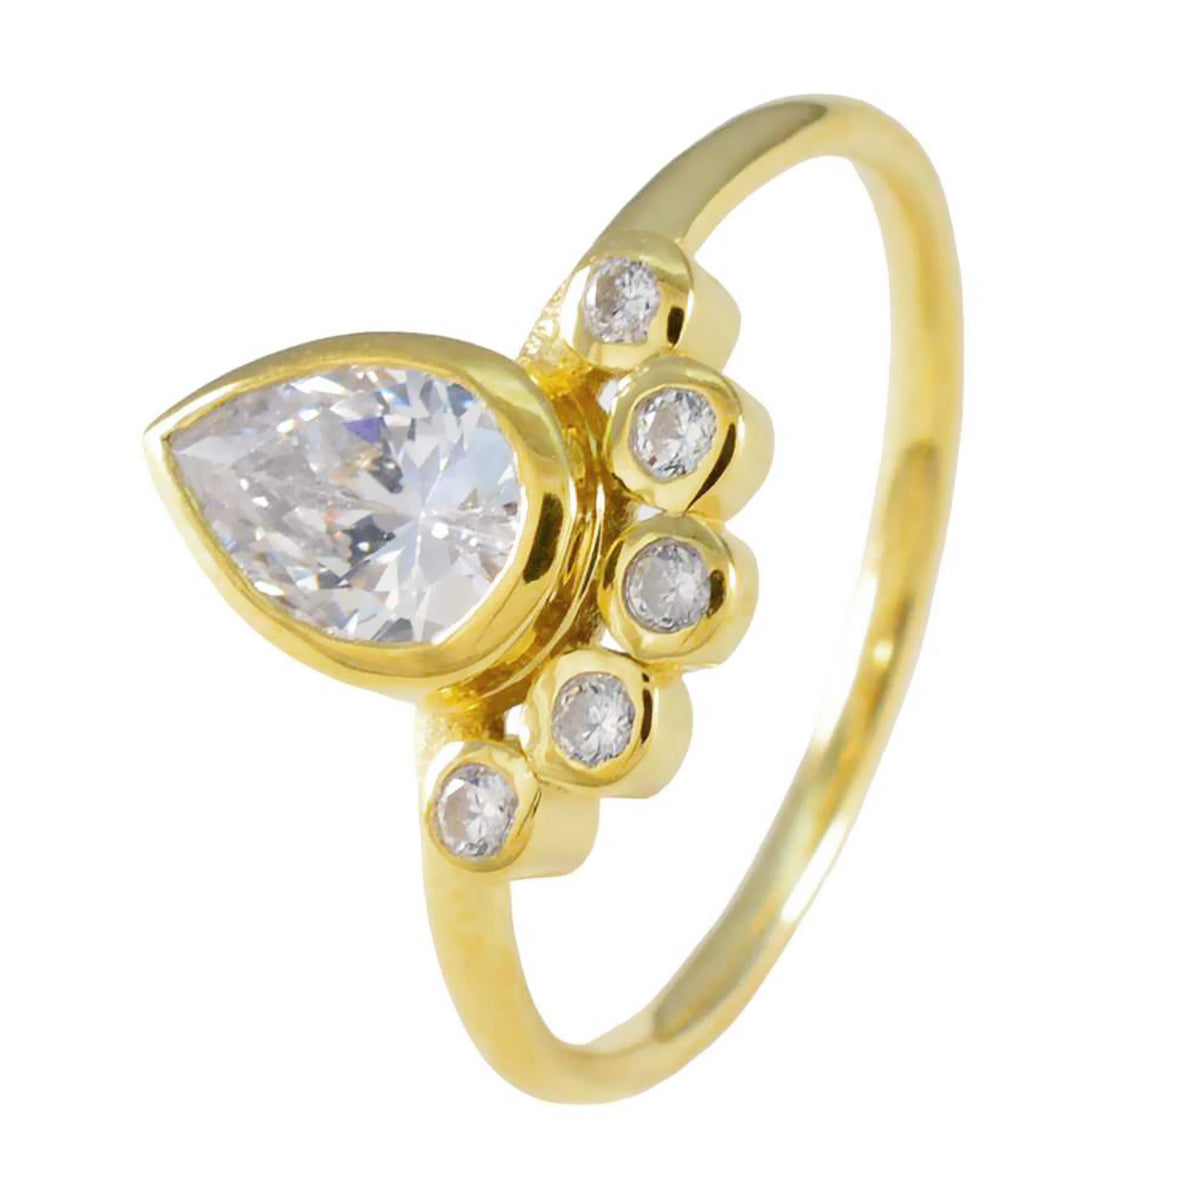 anello in argento riyo jaipur con placcatura in oro giallo anello con castone a forma di pera in pietra bianca cz